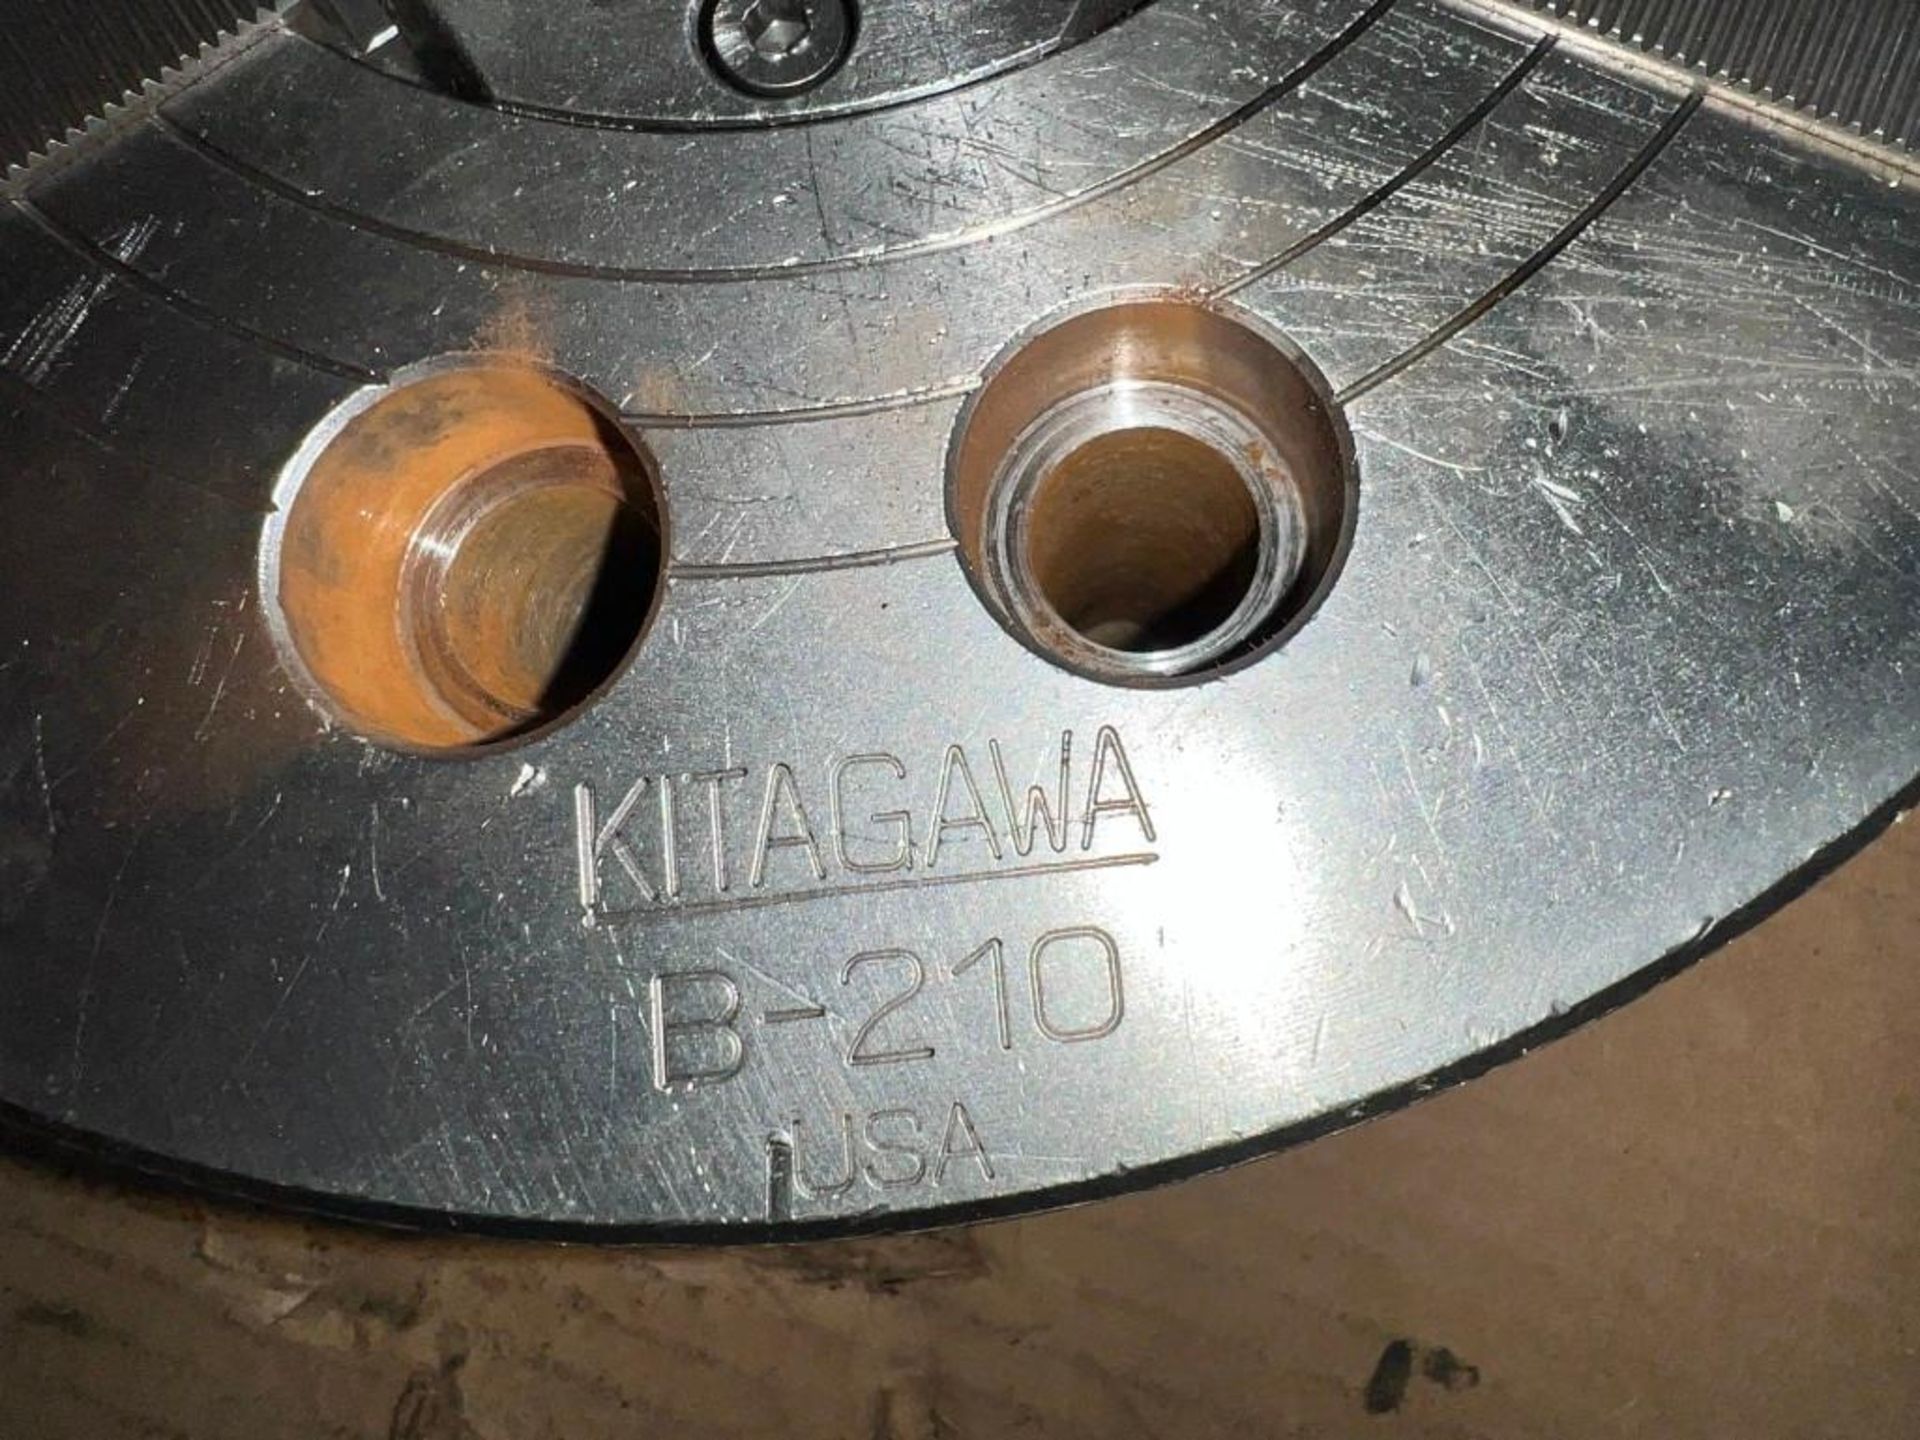 Kitagawa #B-210, 10" 3 Jaw Chuck - Image 2 of 3